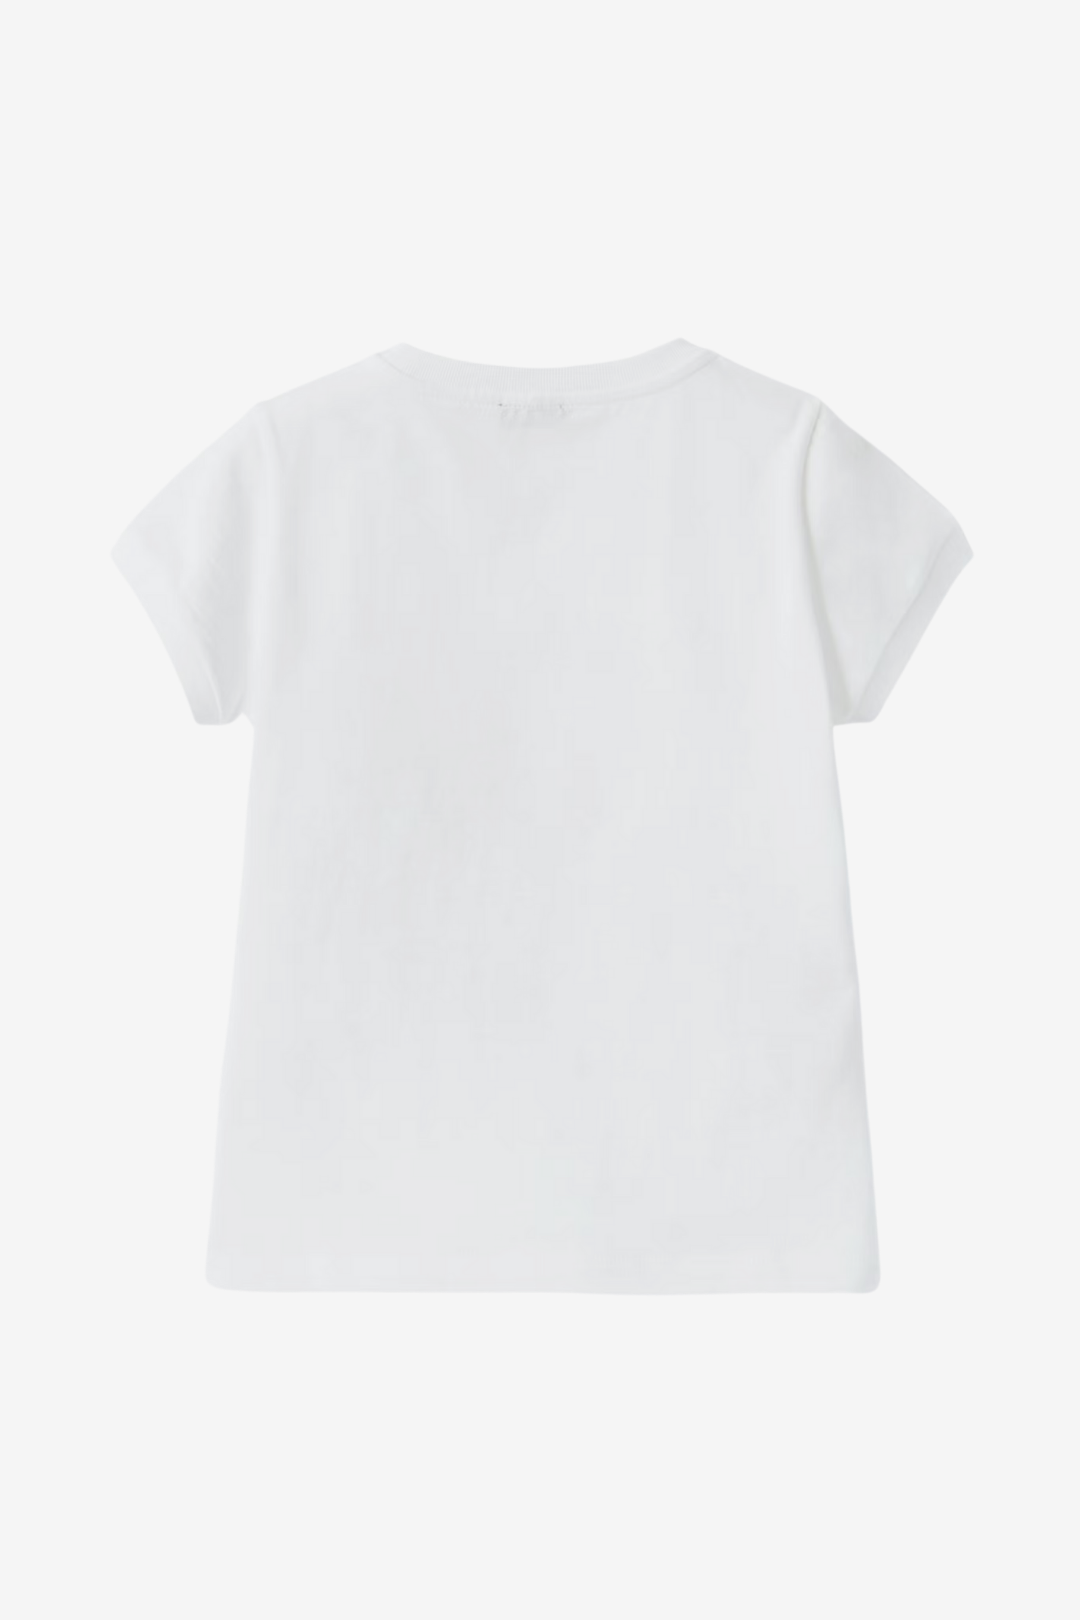 Weißes T-Shirt mit Mädchen